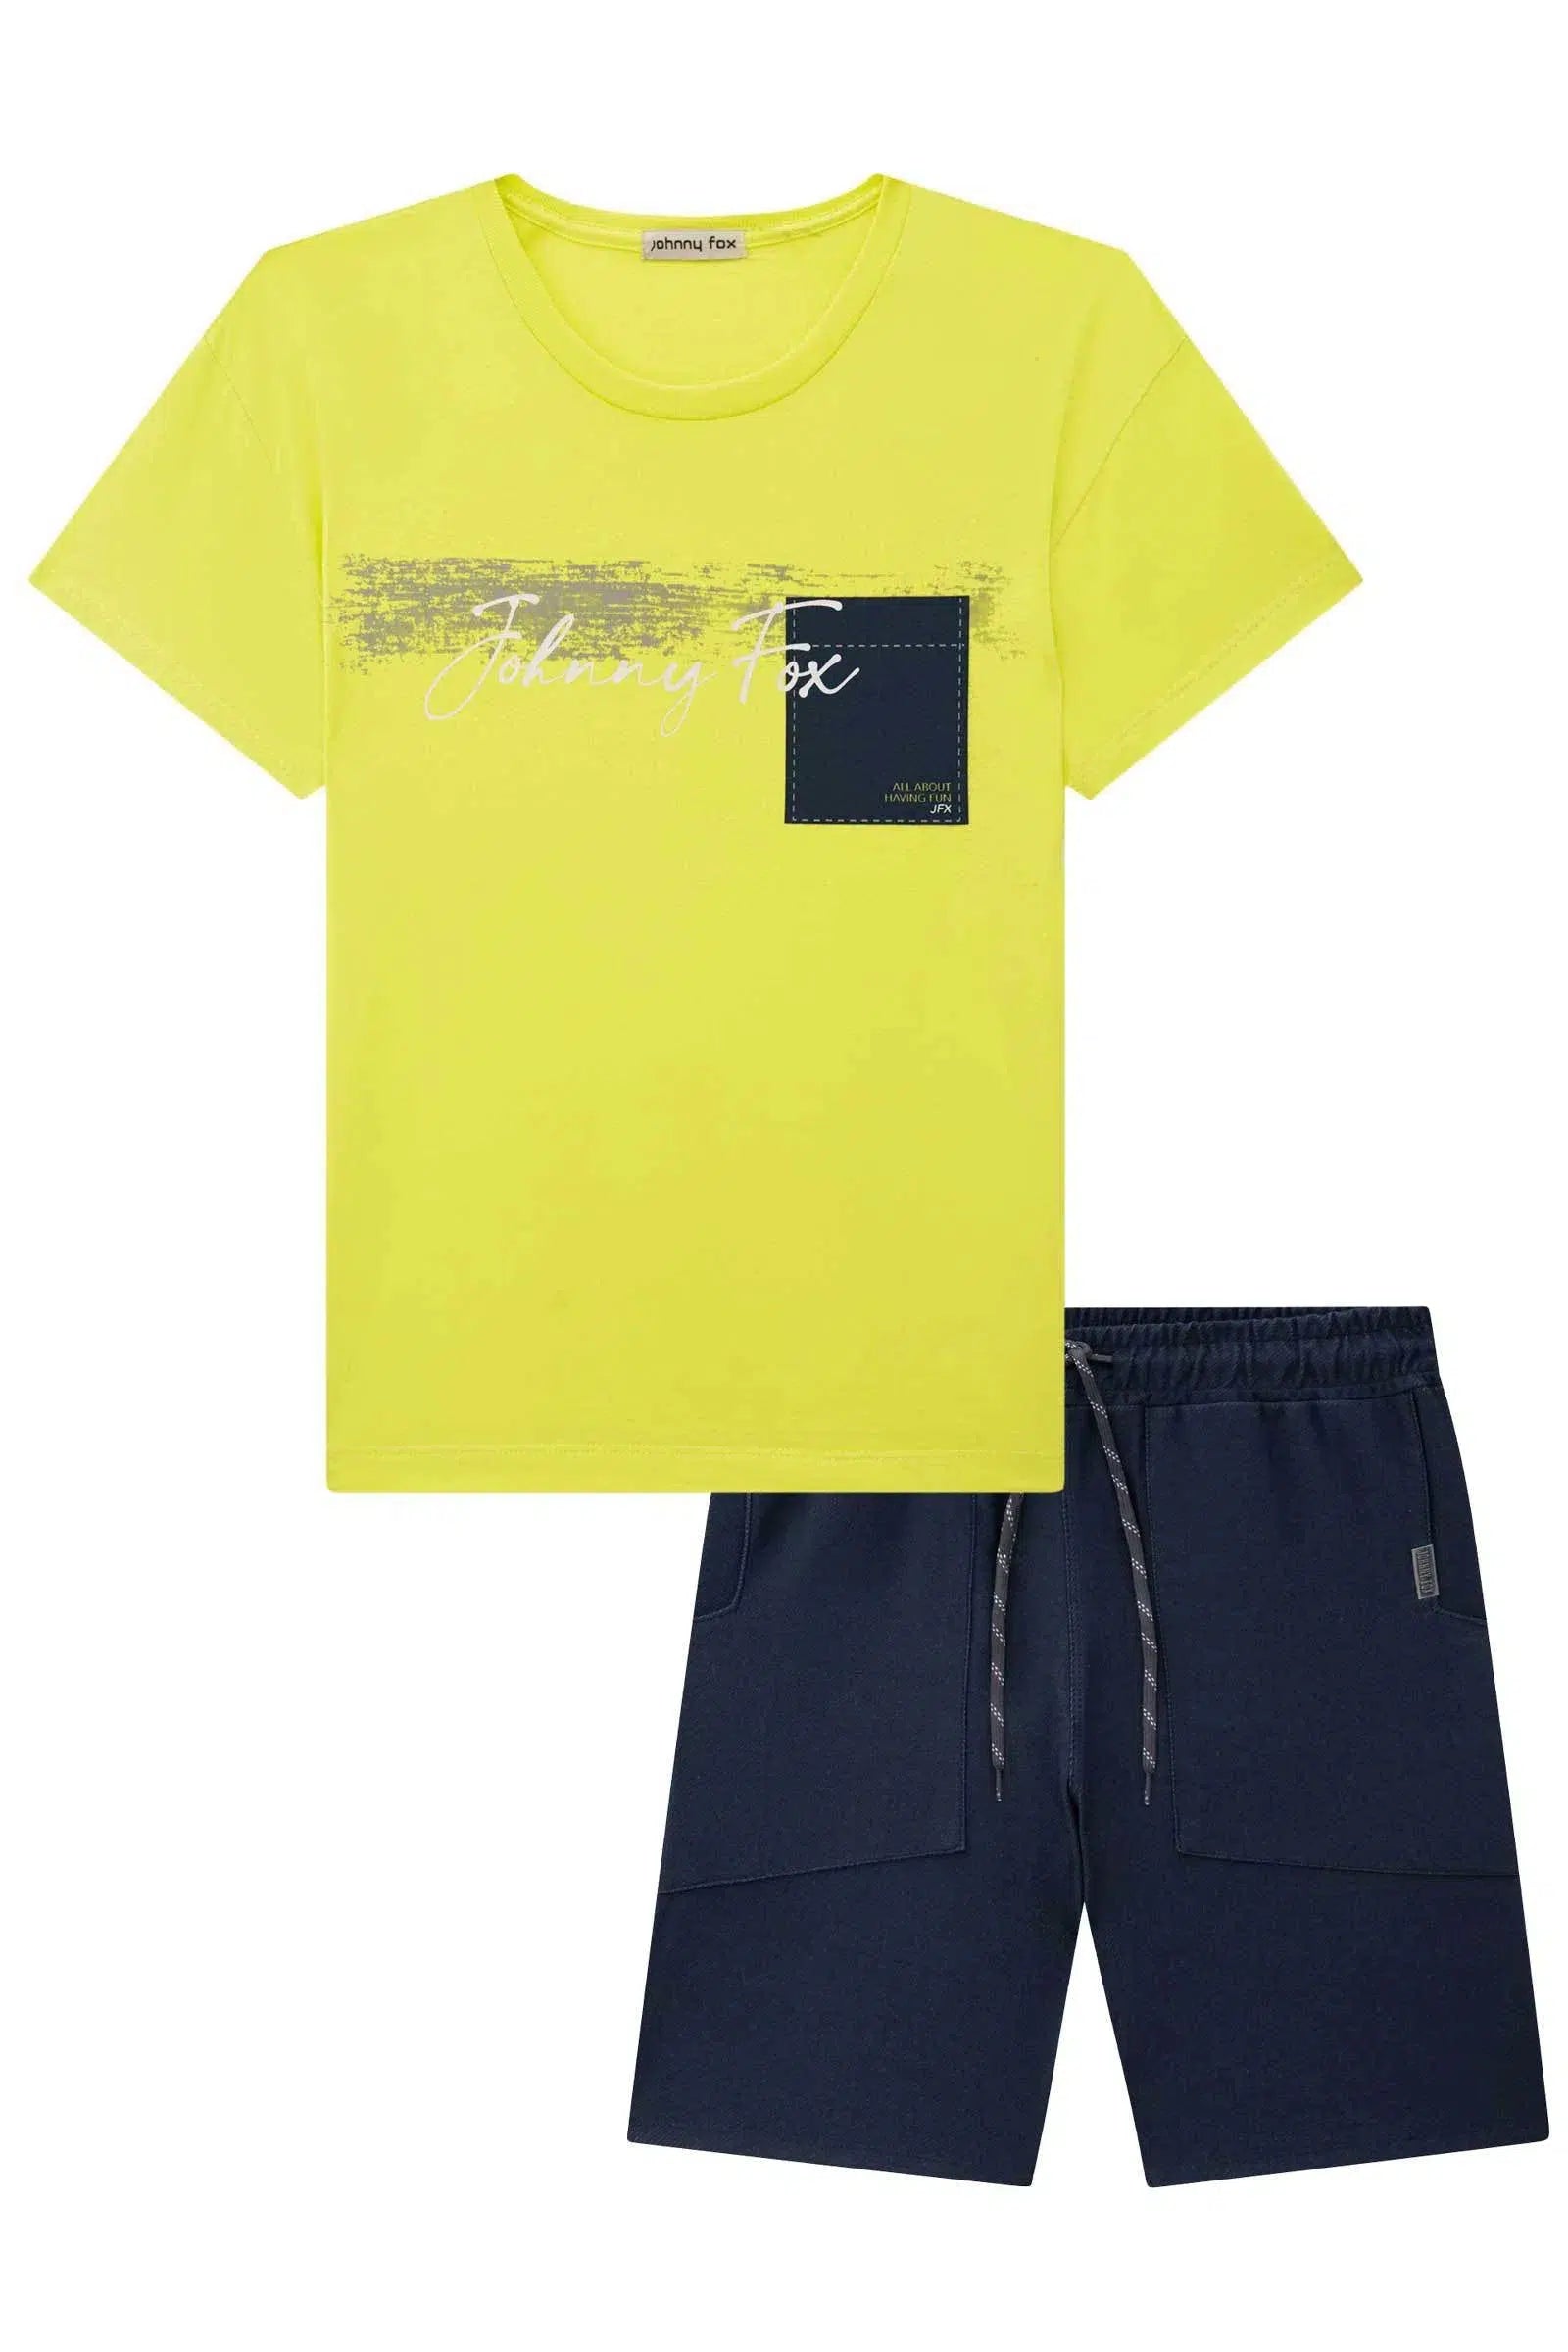 Conjunto de Camiseta em Meia Malha e Bermuda em Cotton Jeans com Elastano 72405 Johnny Fox